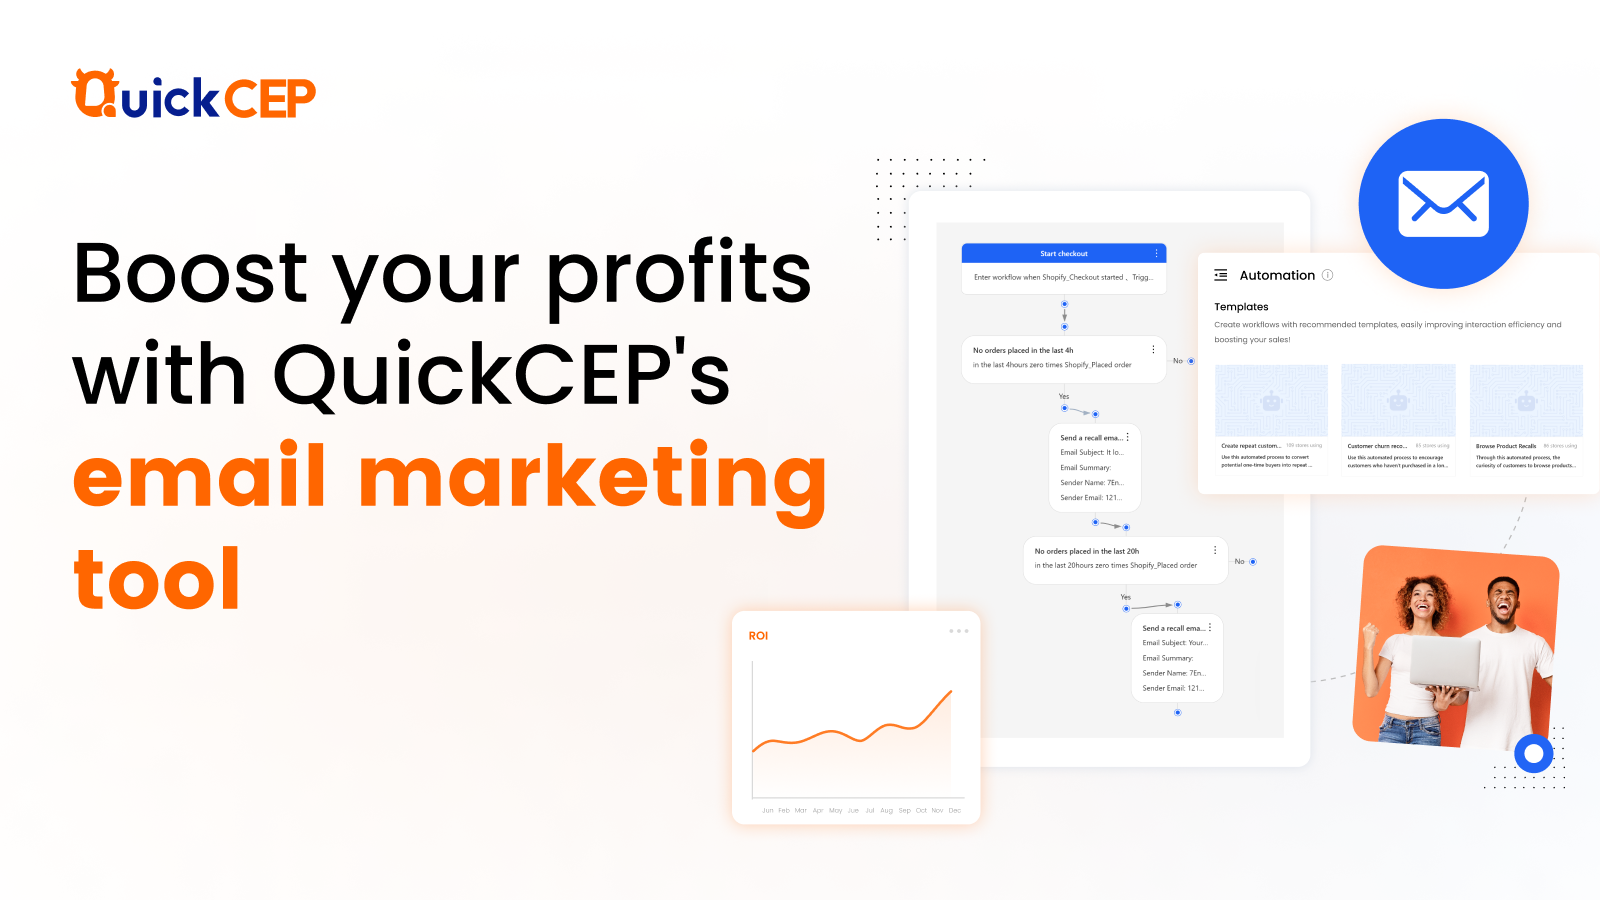 Impulsa tus ventas con las herramientas de marketing por correo electrónico de QuickCEP